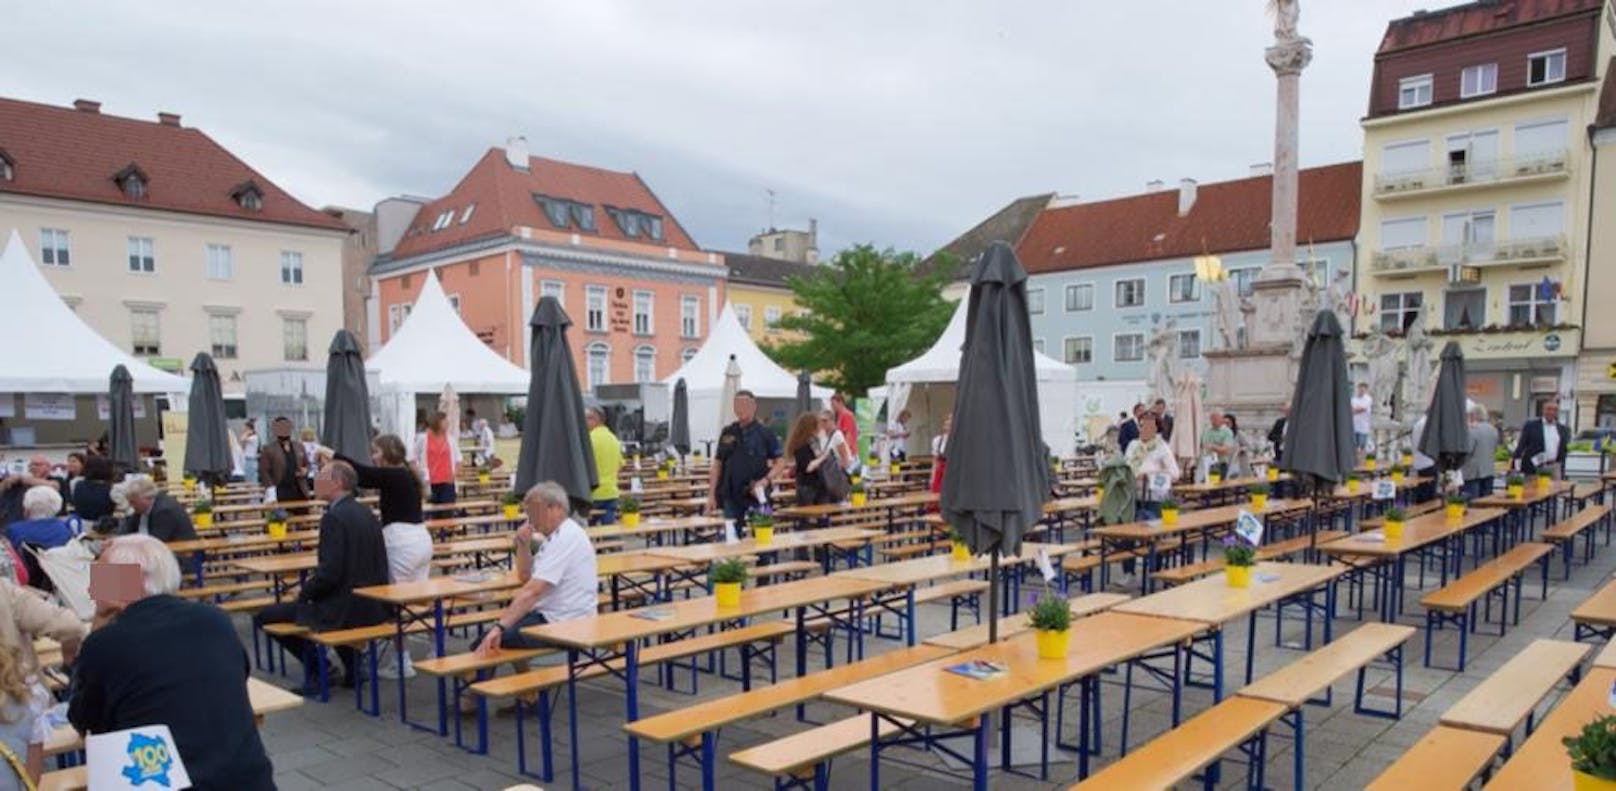 Ganz in der Nähe des Sozialmarktes: Fest anlässlich 100 Jahre Niederösterreich